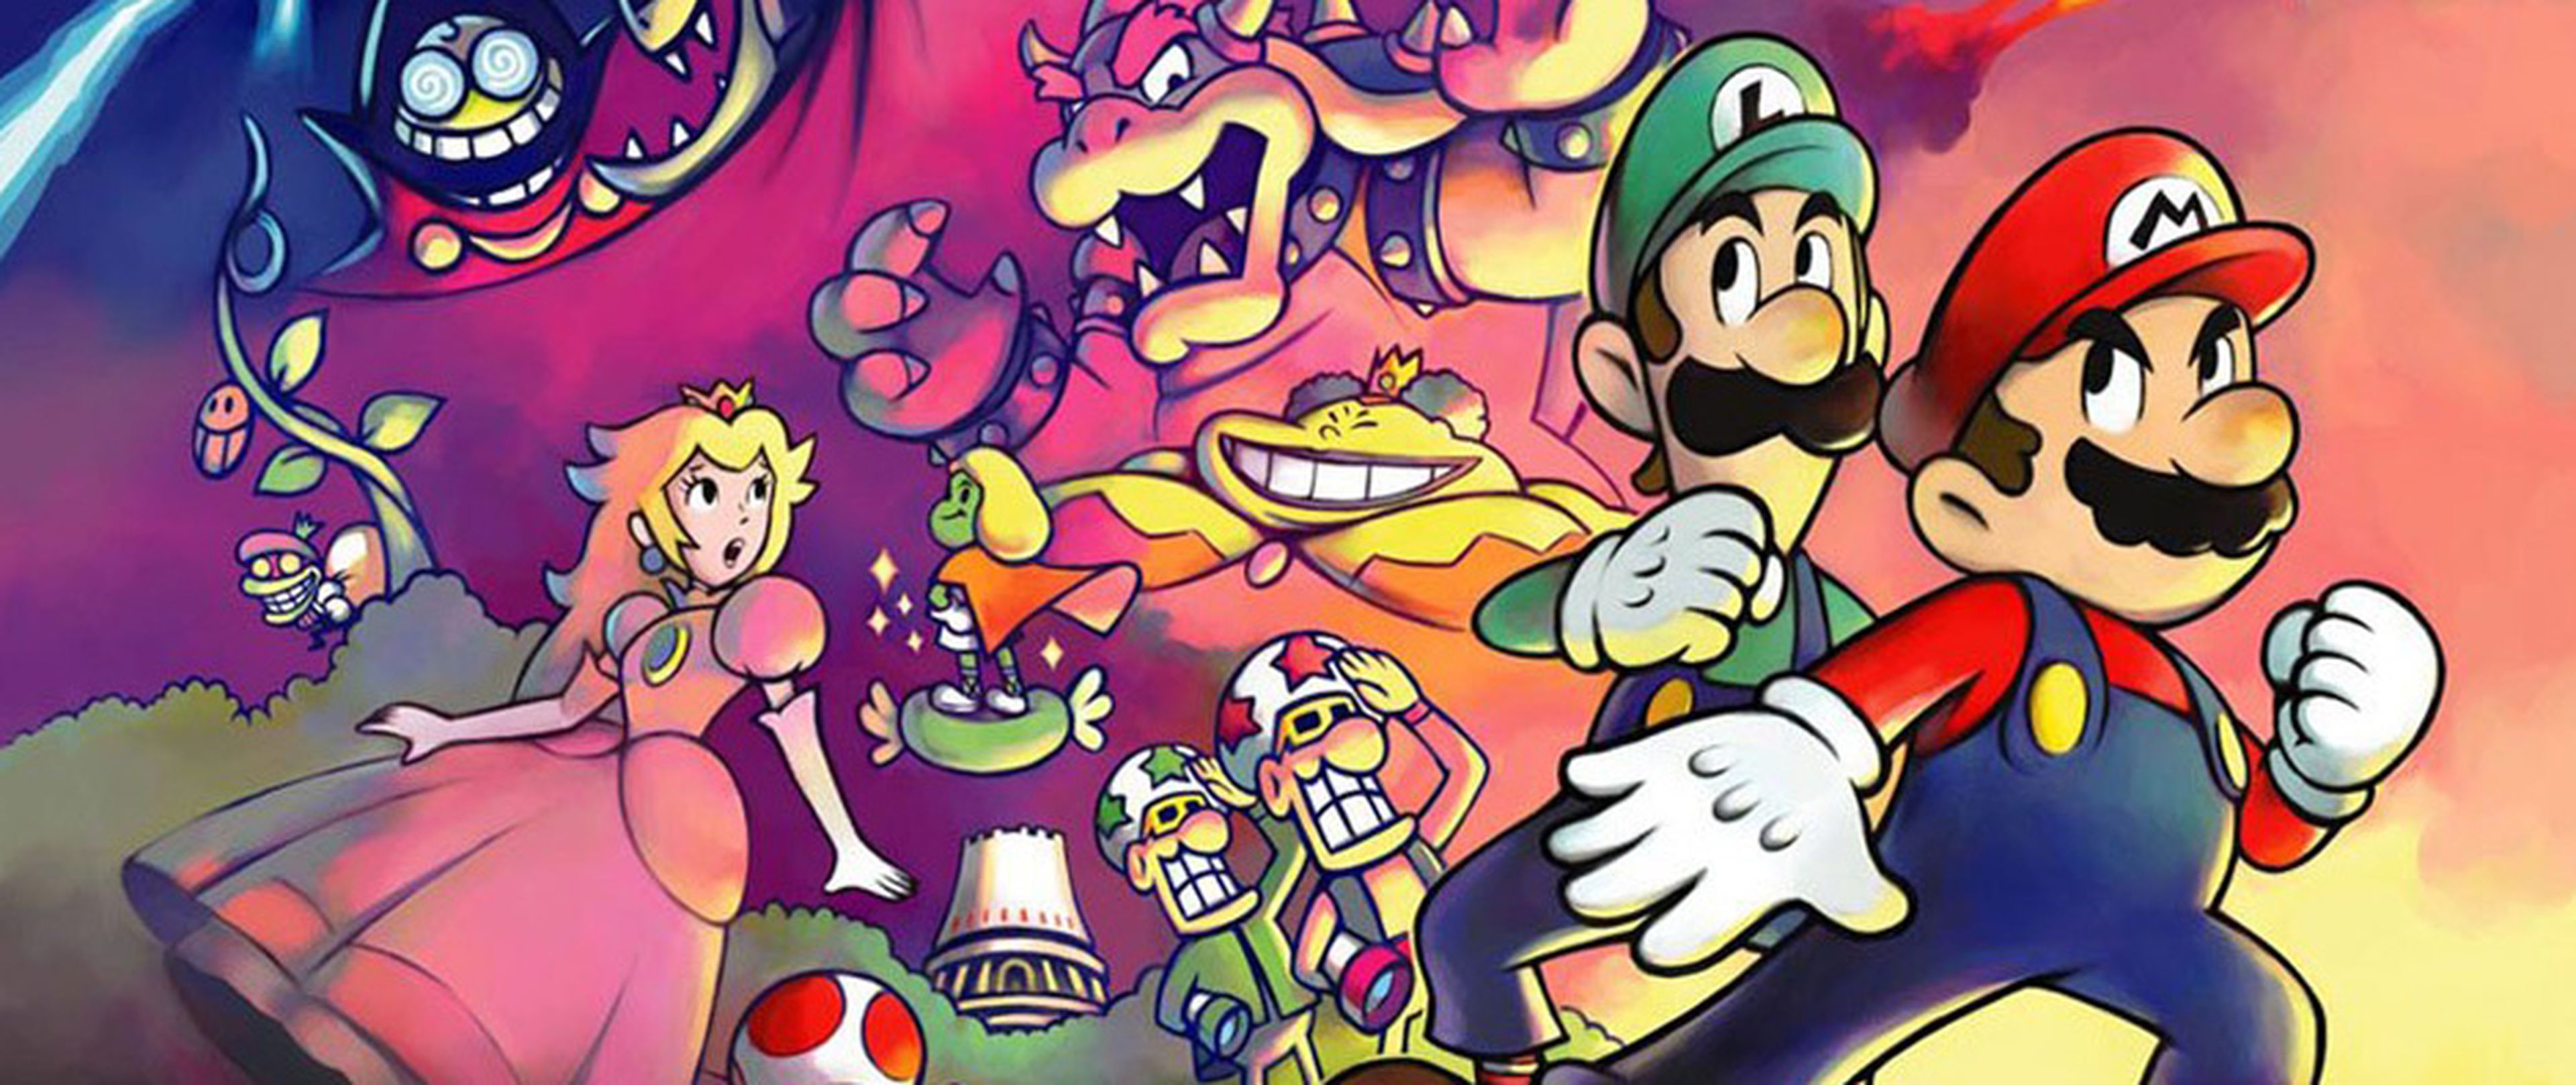 Juego Nintendo 3DS Mario & Luigi Superstar Saga + Secuaces de Bowser (nuevo)